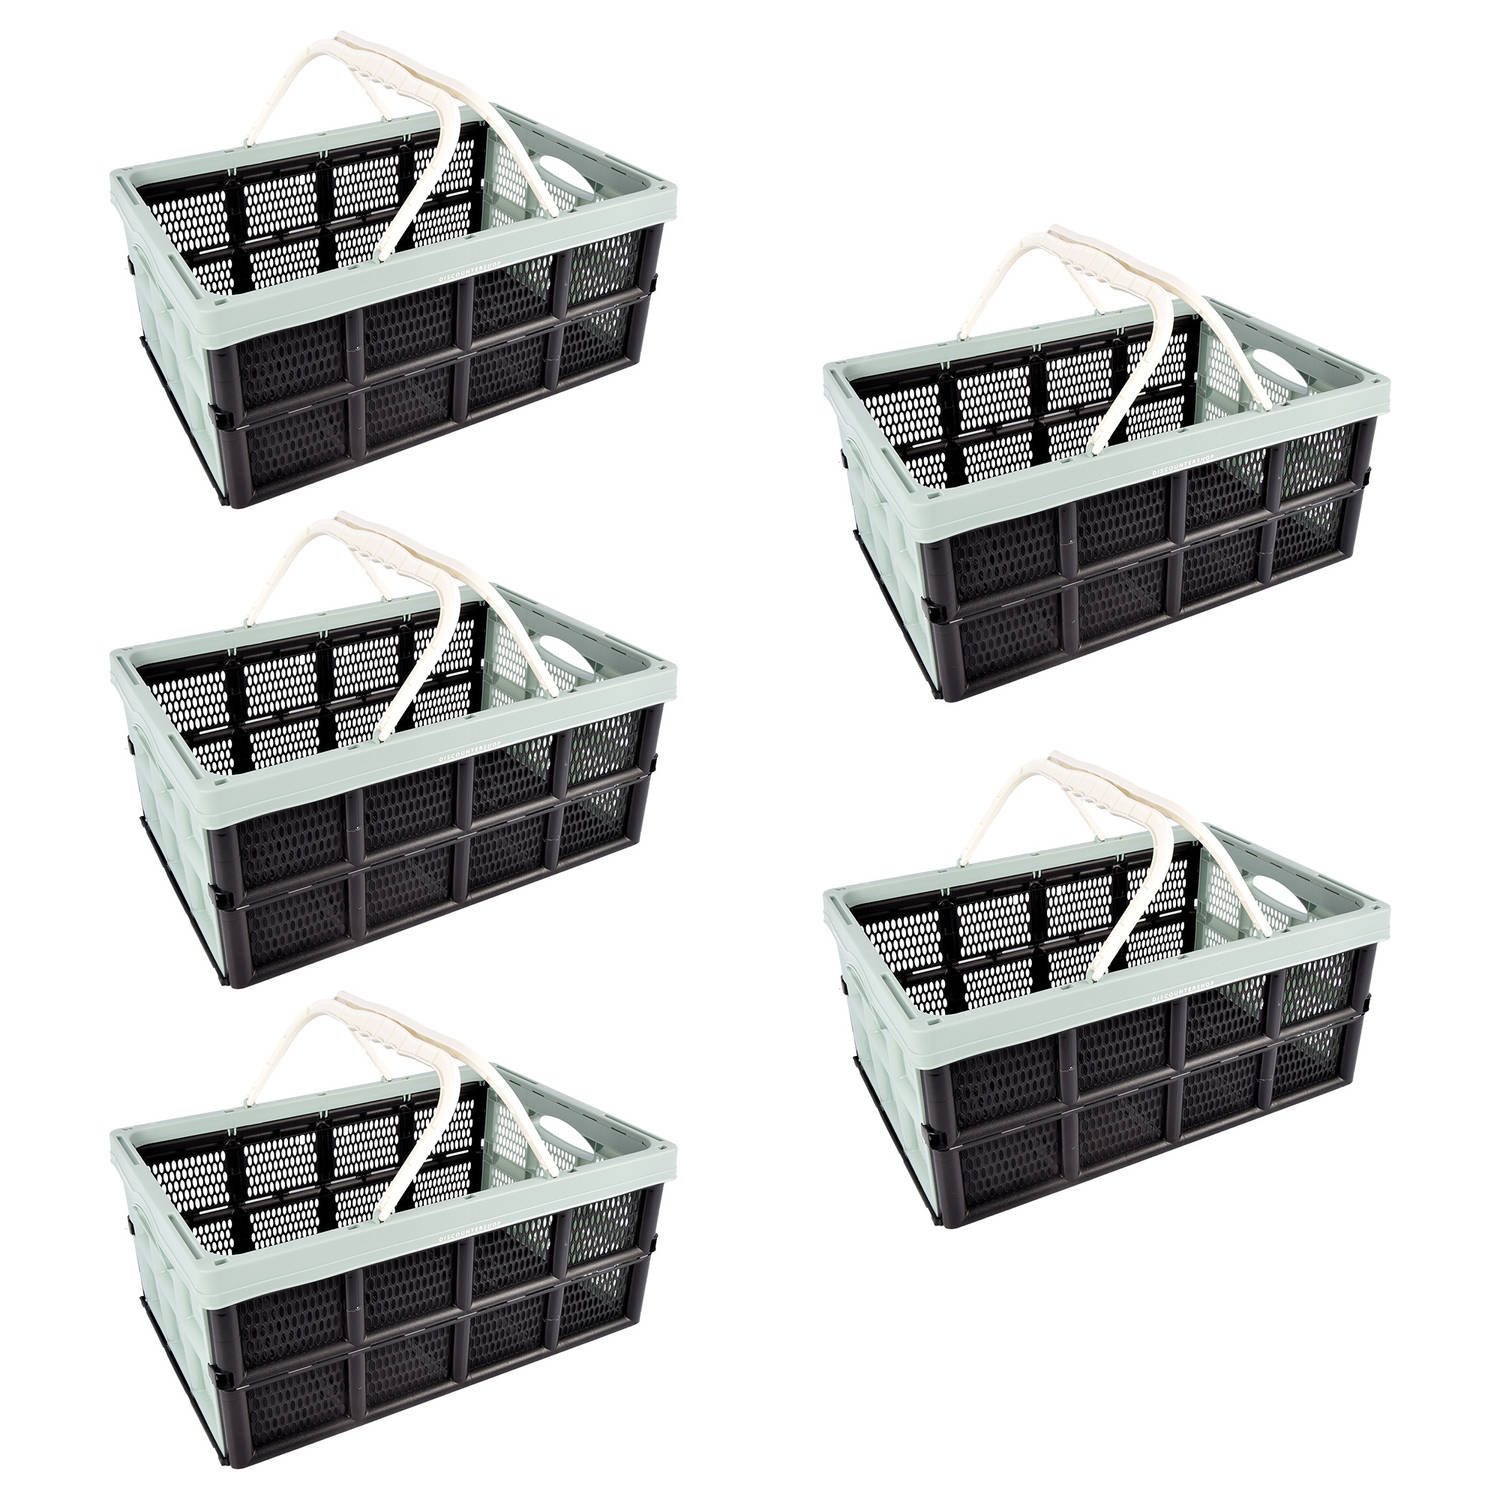 Set van 5 Multifunctionele Vouwkratten Met Hengsel - 40 Liter - Groen/Zwart - Draagbaar en Ruimtebesparend - Ideaal Opslagbakjes voor Diverse Spullen - 50x34x24cm